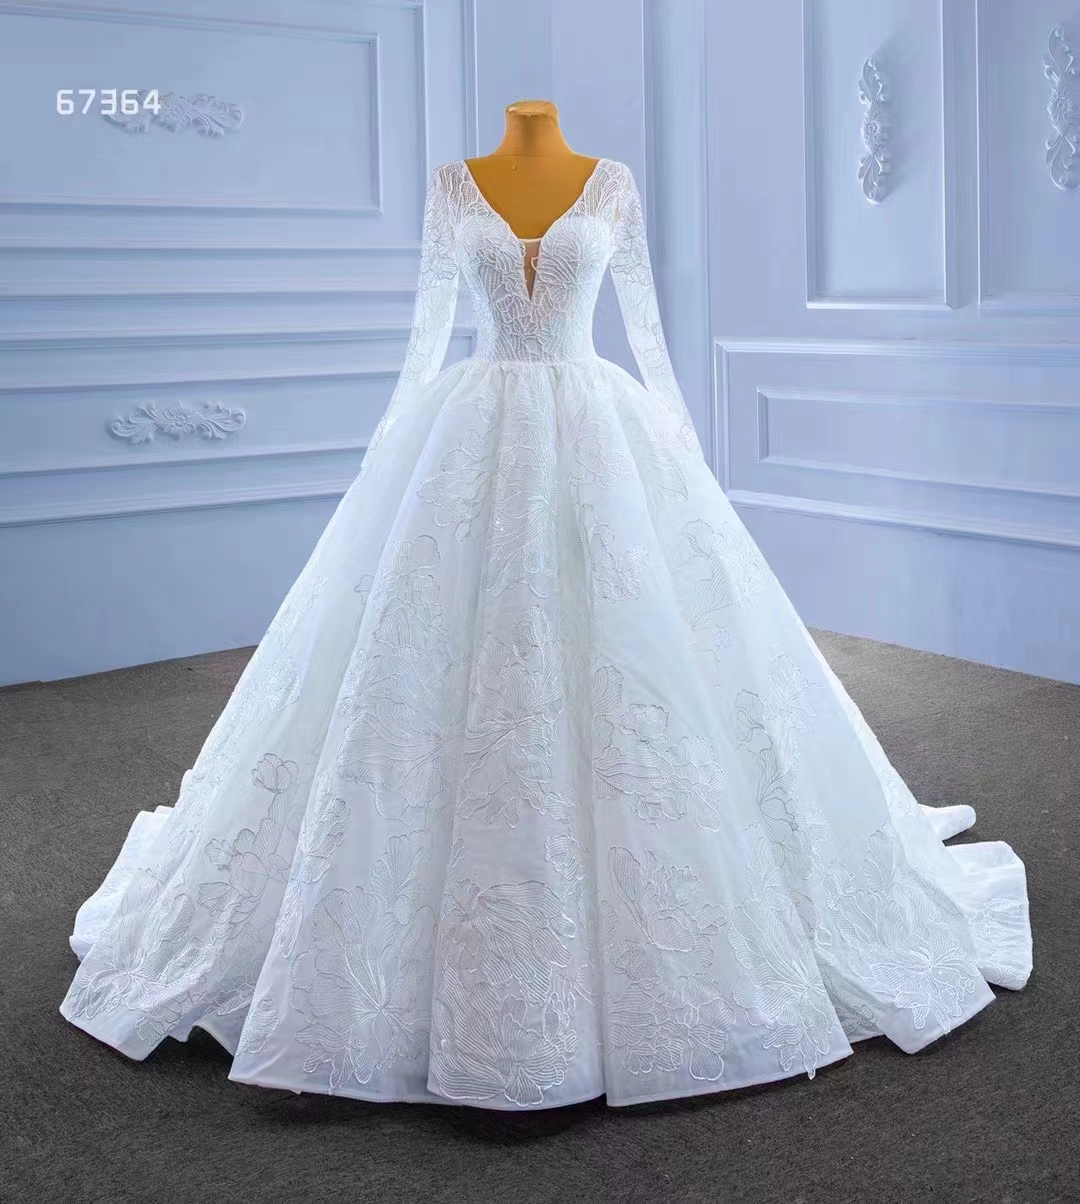 Biały tiul z długim rękawem Turk Bridal Ball Suknia Elegancka sukienka ślubna SM67364